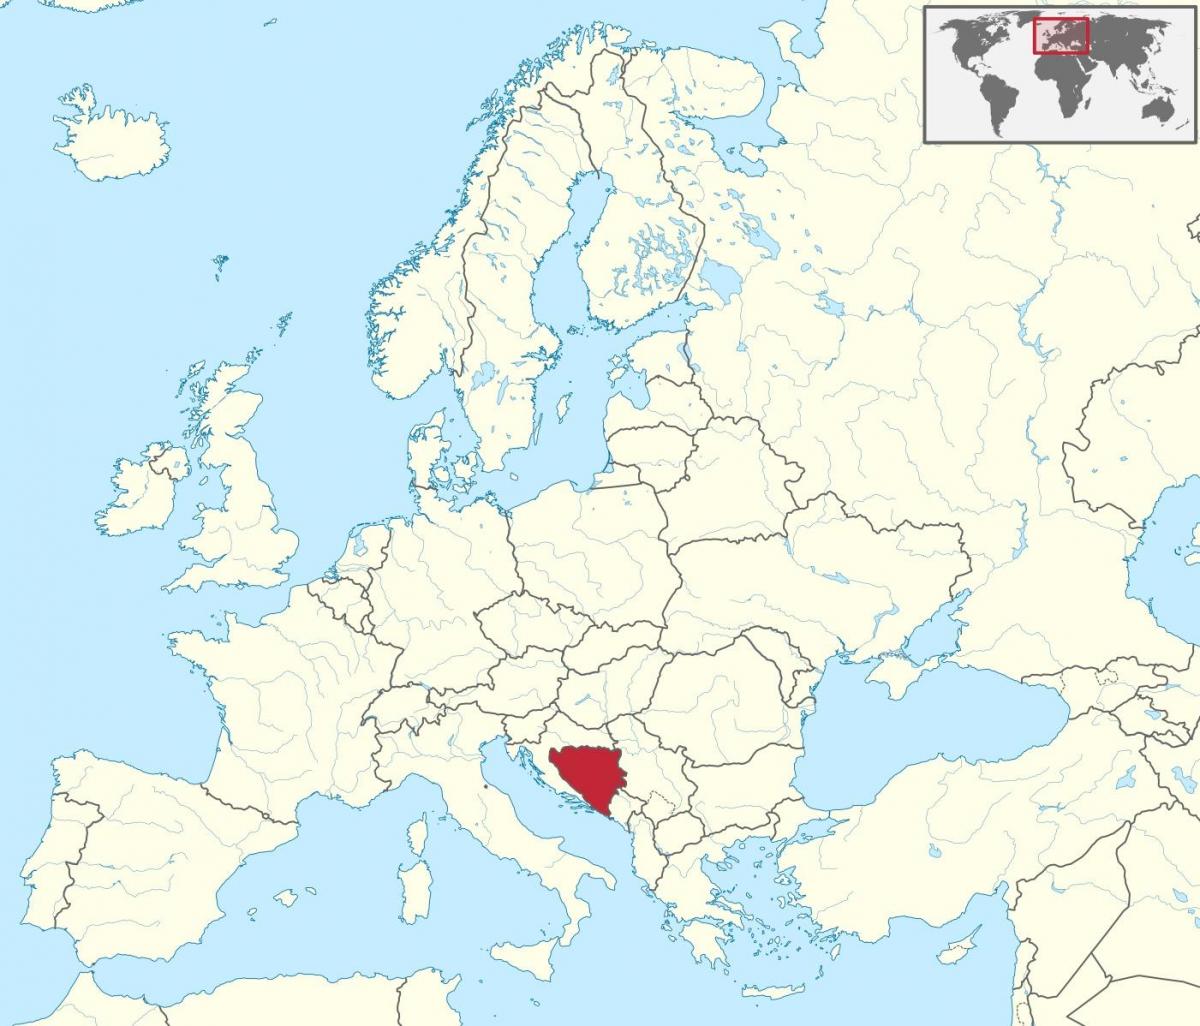 Bosníu á kort af evrópu